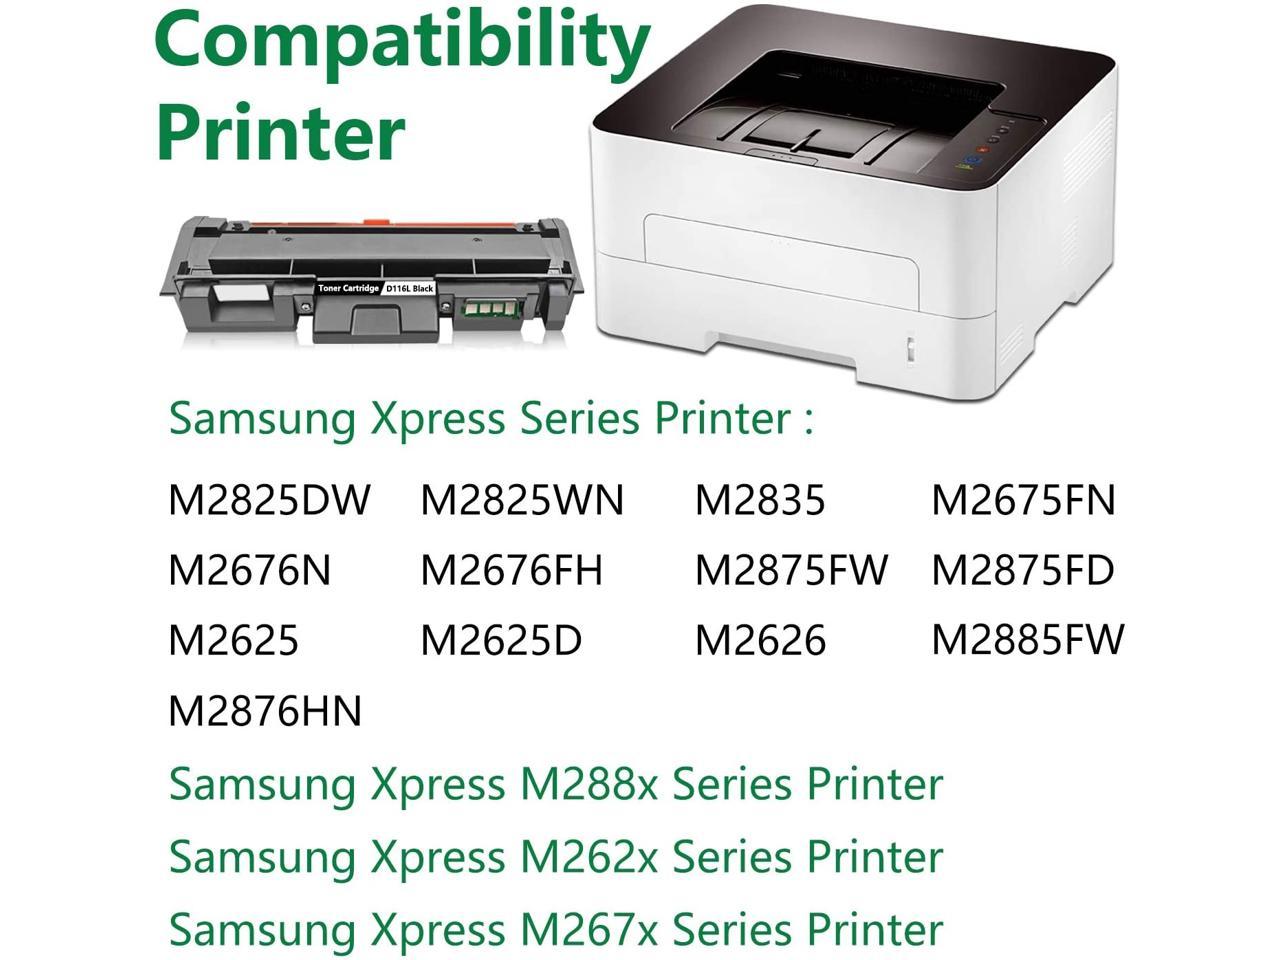 Sikker stamme flygtninge Replacement for D116L MLT-D116L Toner Cartridge (2 Pack Black) Compatible  for Samsung Xpress M2876HN M2676FH M2825DW M2835 M2675FN M2676N M2625D  M2626 M2885FW M288x M262x Printer Toner Cartridge. - Newegg.com